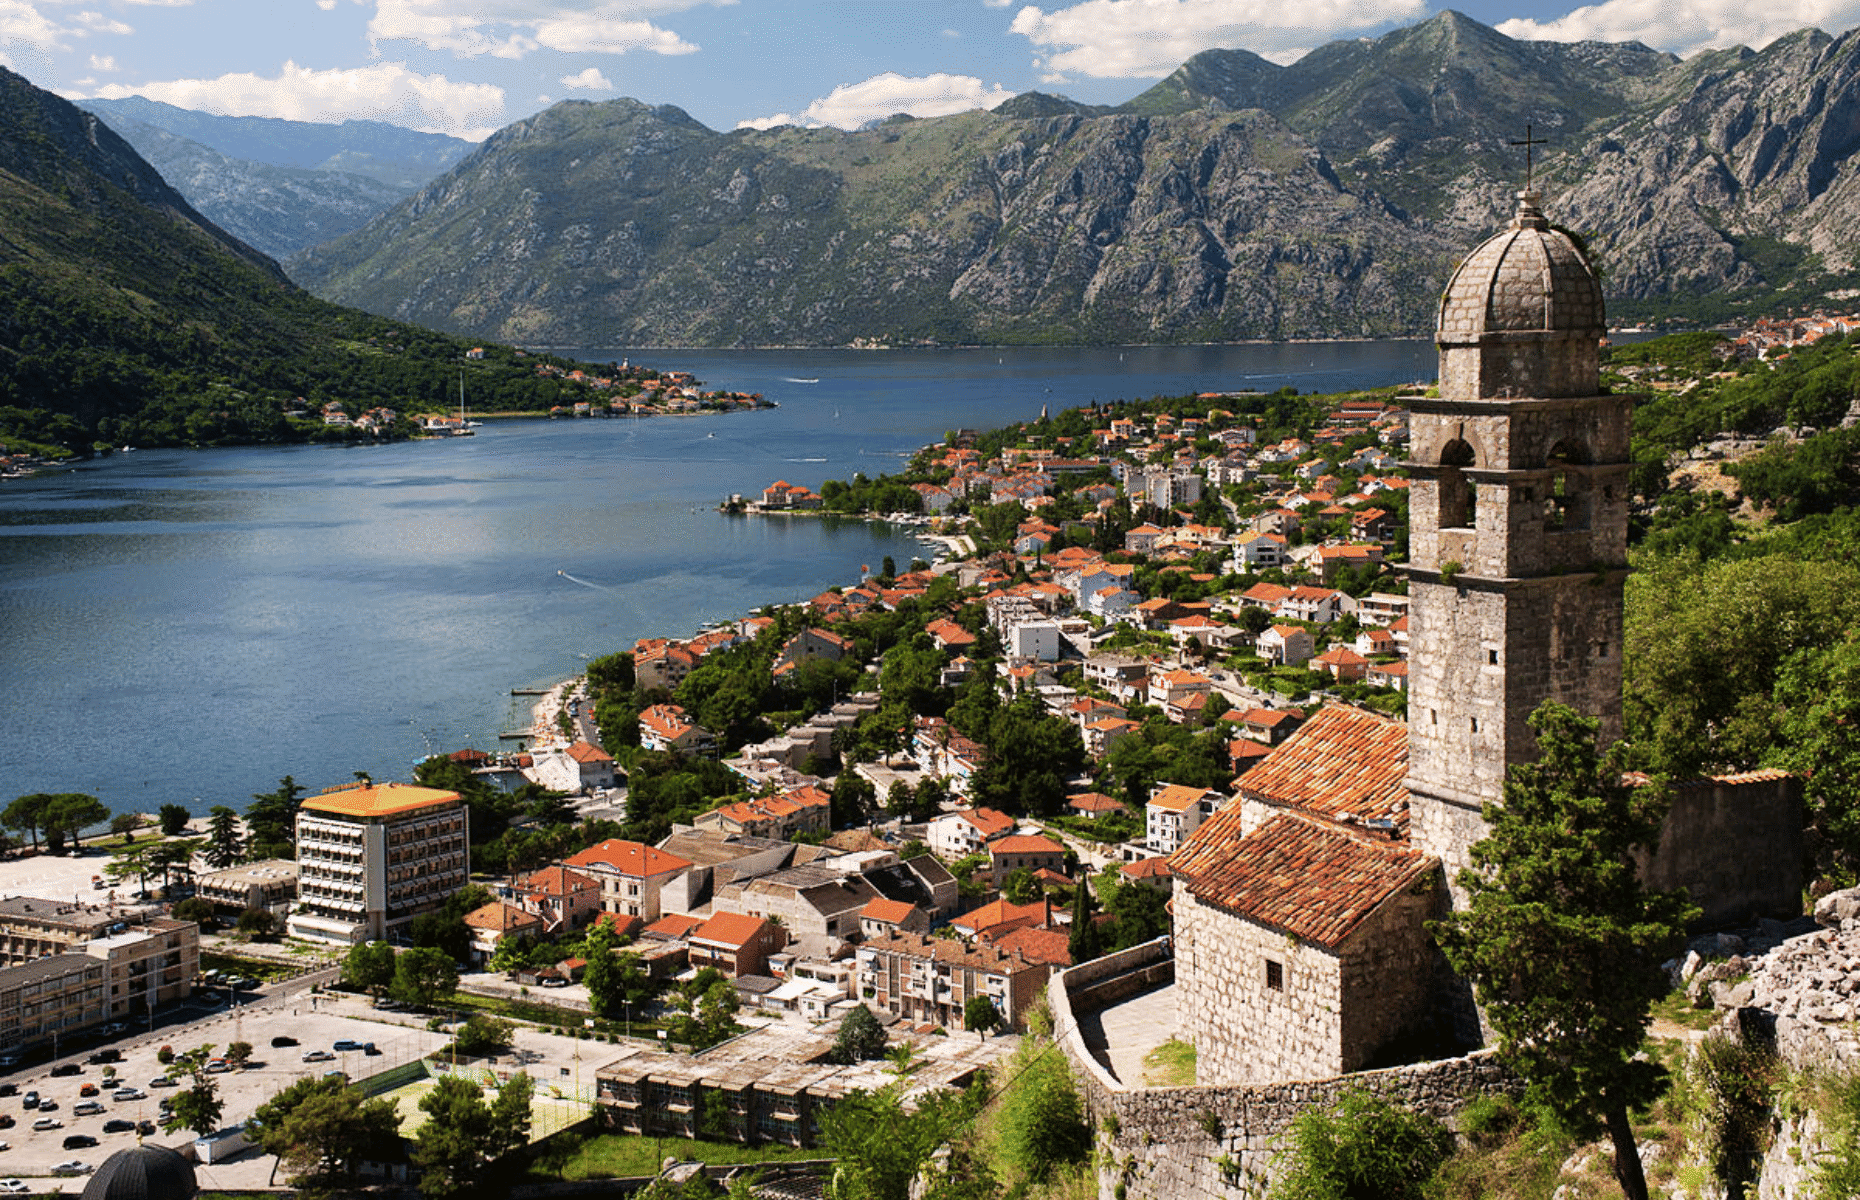 <p>La plupart des gens connaissent et aiment la Croatie, en particulier la ville idyllique de Dubrovnik, mais à quelques heures de là, vous trouverez un joyau tout aussi stupéfiant. Le Monténégro est un petit pays des Balkans qui abrite certains des paysages naturels les plus pittoresques du monde. Des montagnes majestueuses, des lacs scintillants et des villes côtières pittoresques font du <a href="https://www.montenegro.travel/fr" class="CMY_Link CMY_Valid" rel="noreferrer noopener">Monténégro une destination incontournable</a>. L’après-midi, vous pourrez visiter la pittoresque ville médiévale de Kotor ou en profiter pour visiter la ville côtière d’Ulcinj, et terminer la journée par un délicieux festin de poisson frais pêché dans les eaux scintillantes du pays. </p>